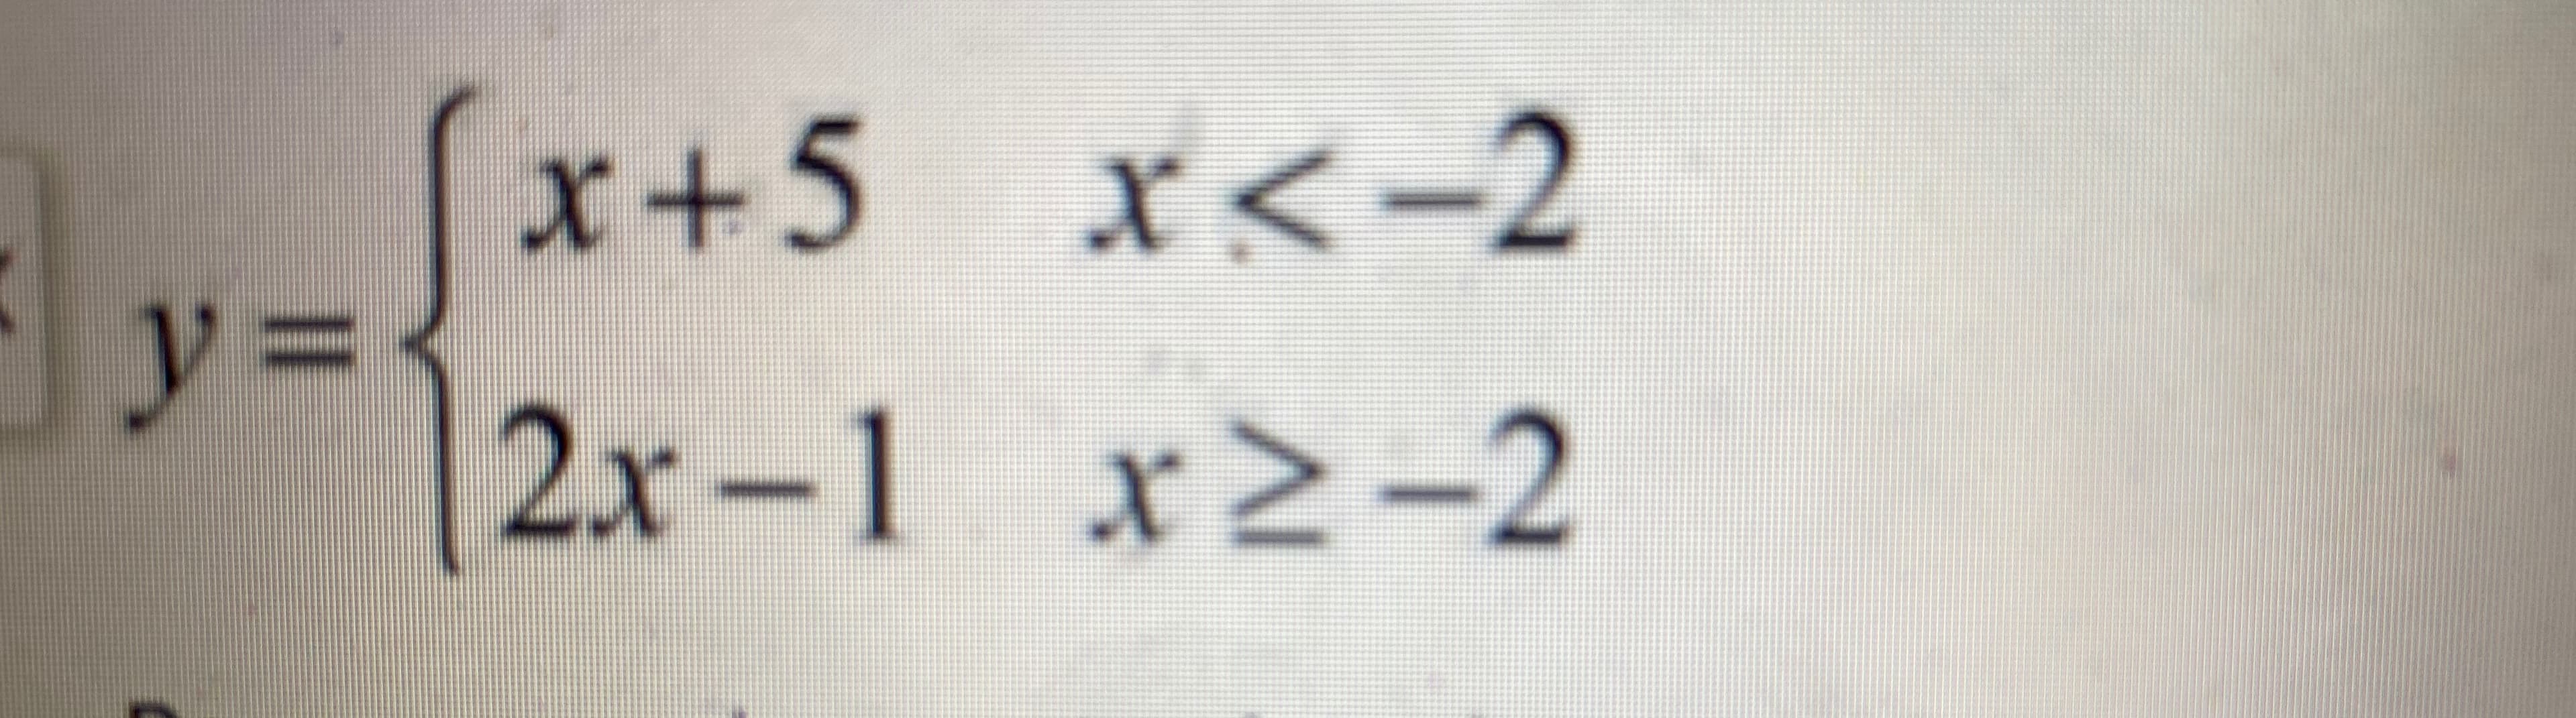 x+5 x<-2
y%3D3
2x-1 x2-2
